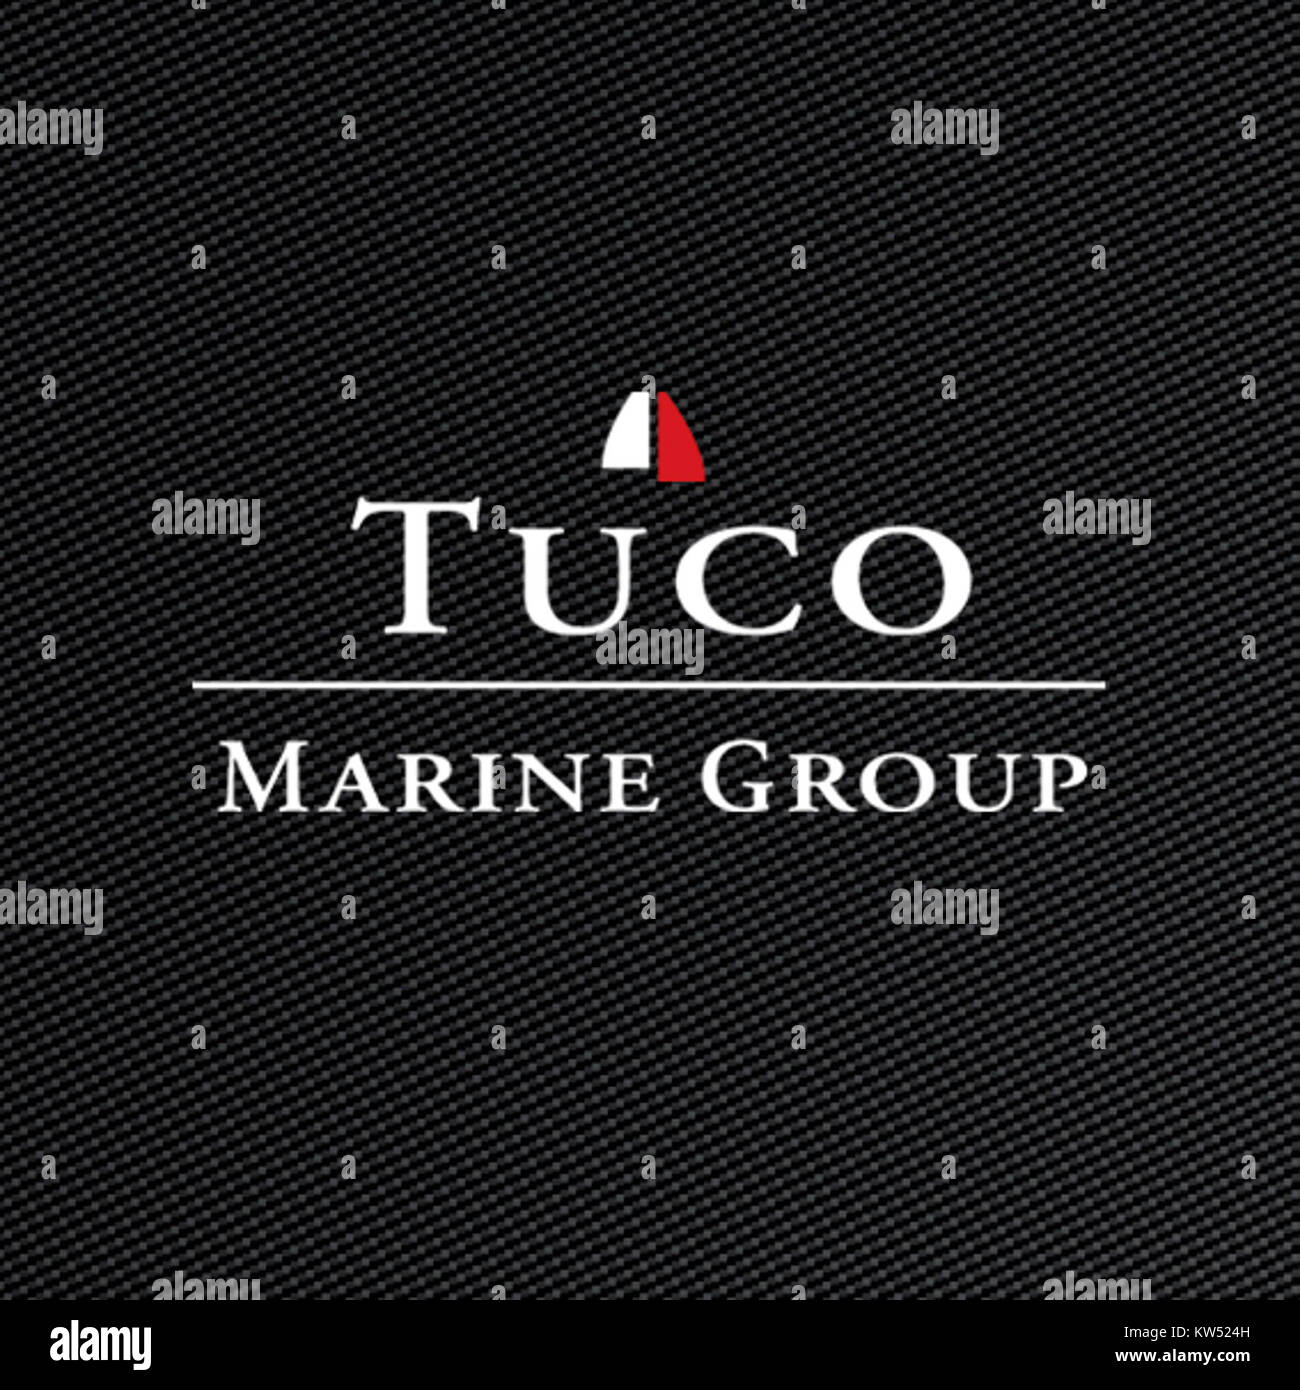 Tuco Marine Group Stock Photo